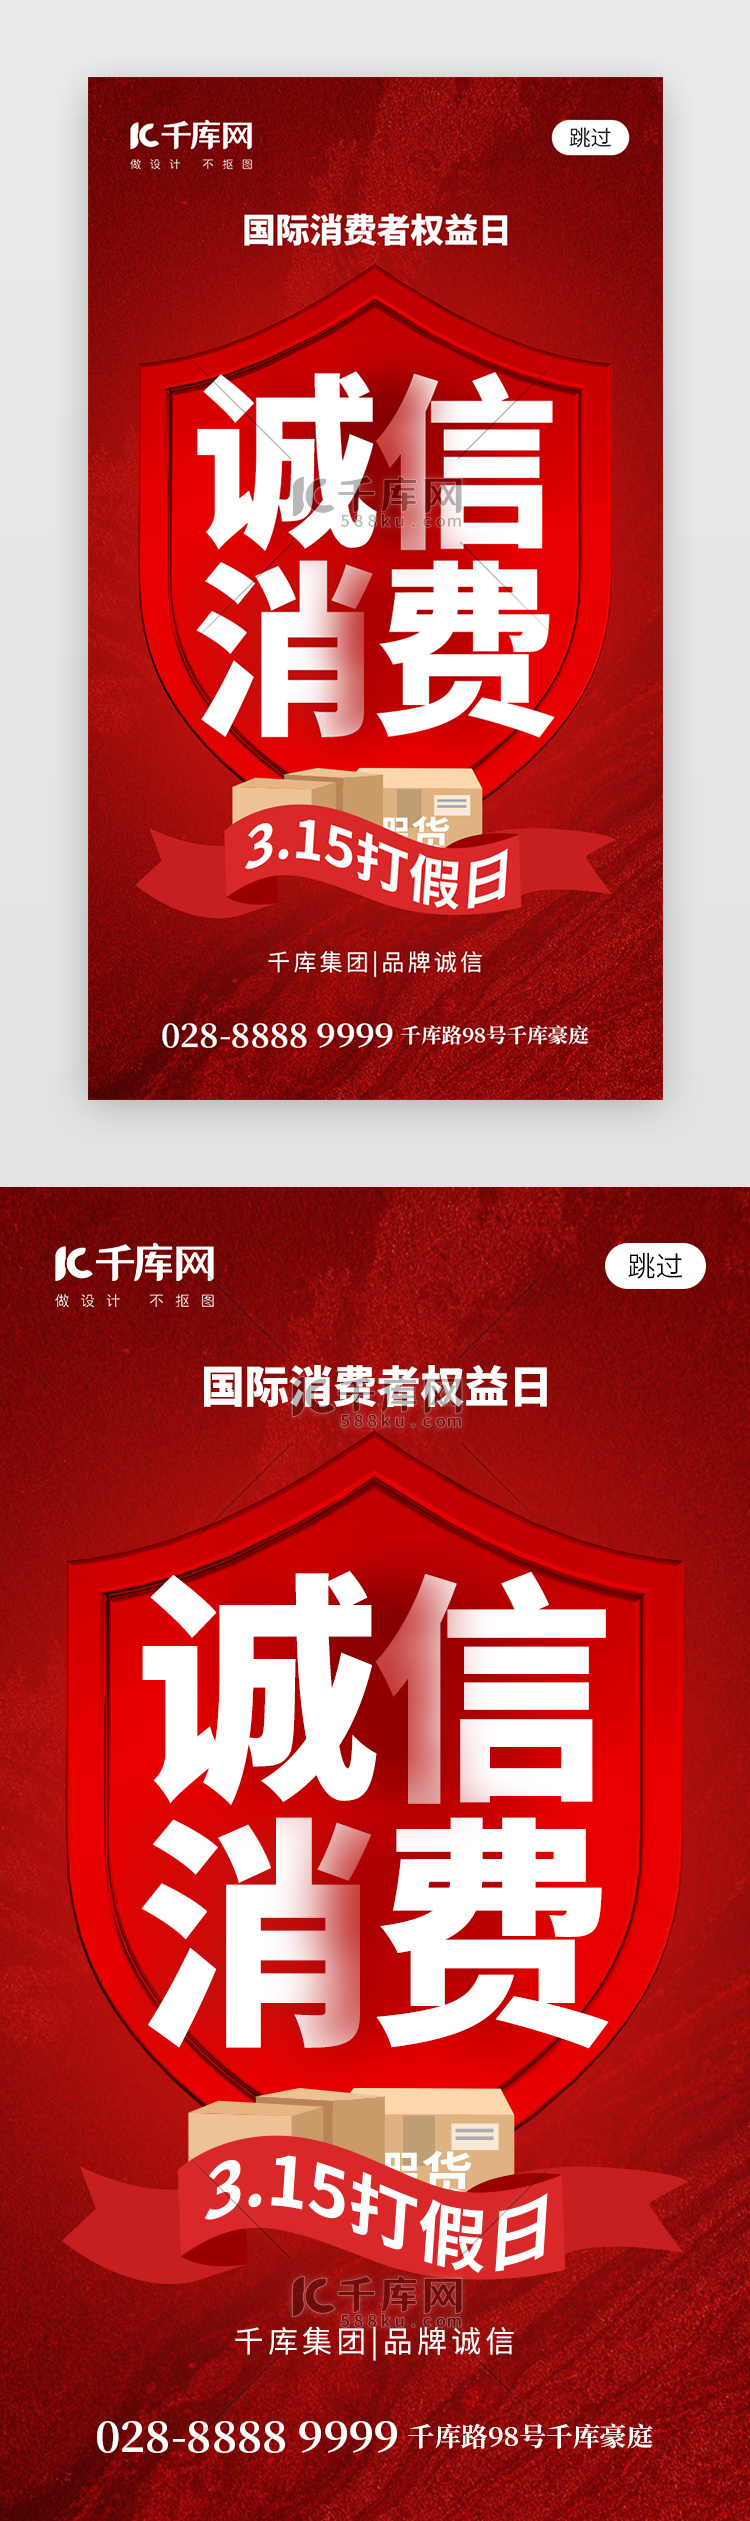 消费者权益日app闪屏创意红色盾牌